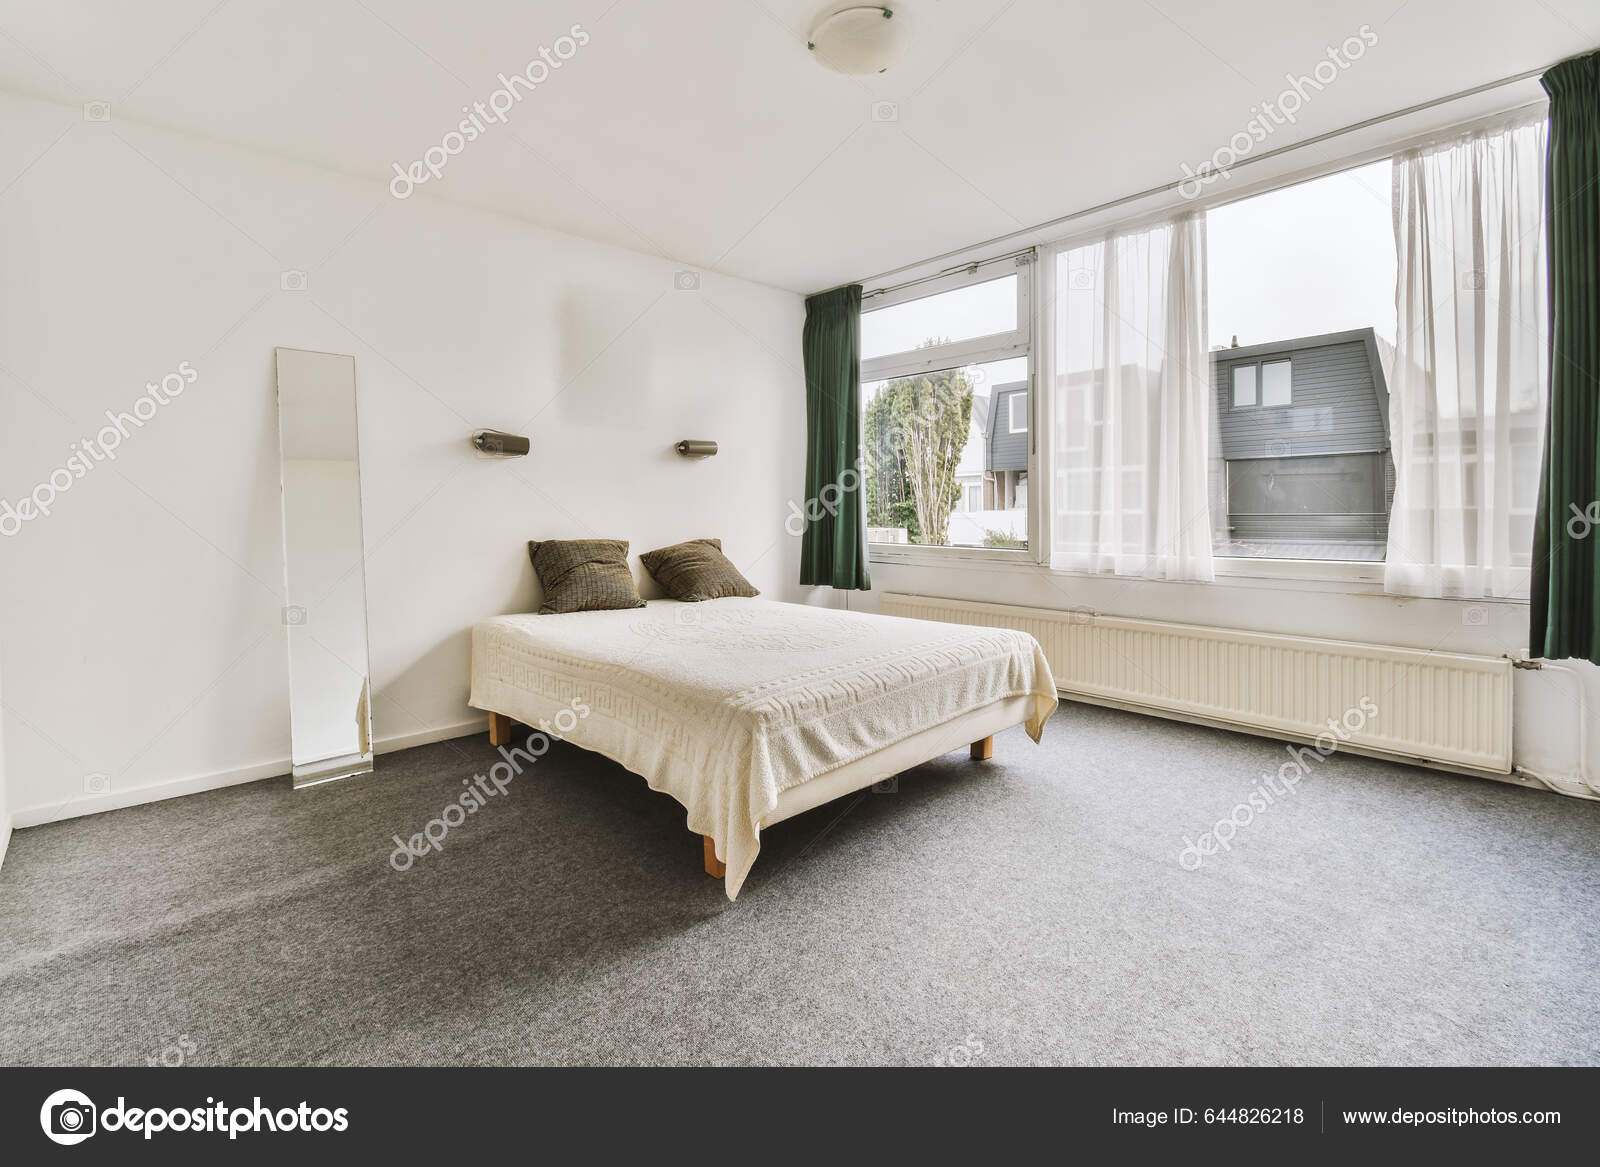 Ett Sovrum Med Vit Säng Och Gröna Gardiner Hänger Väggen — Stockfotografi ©  procontributors #644826218